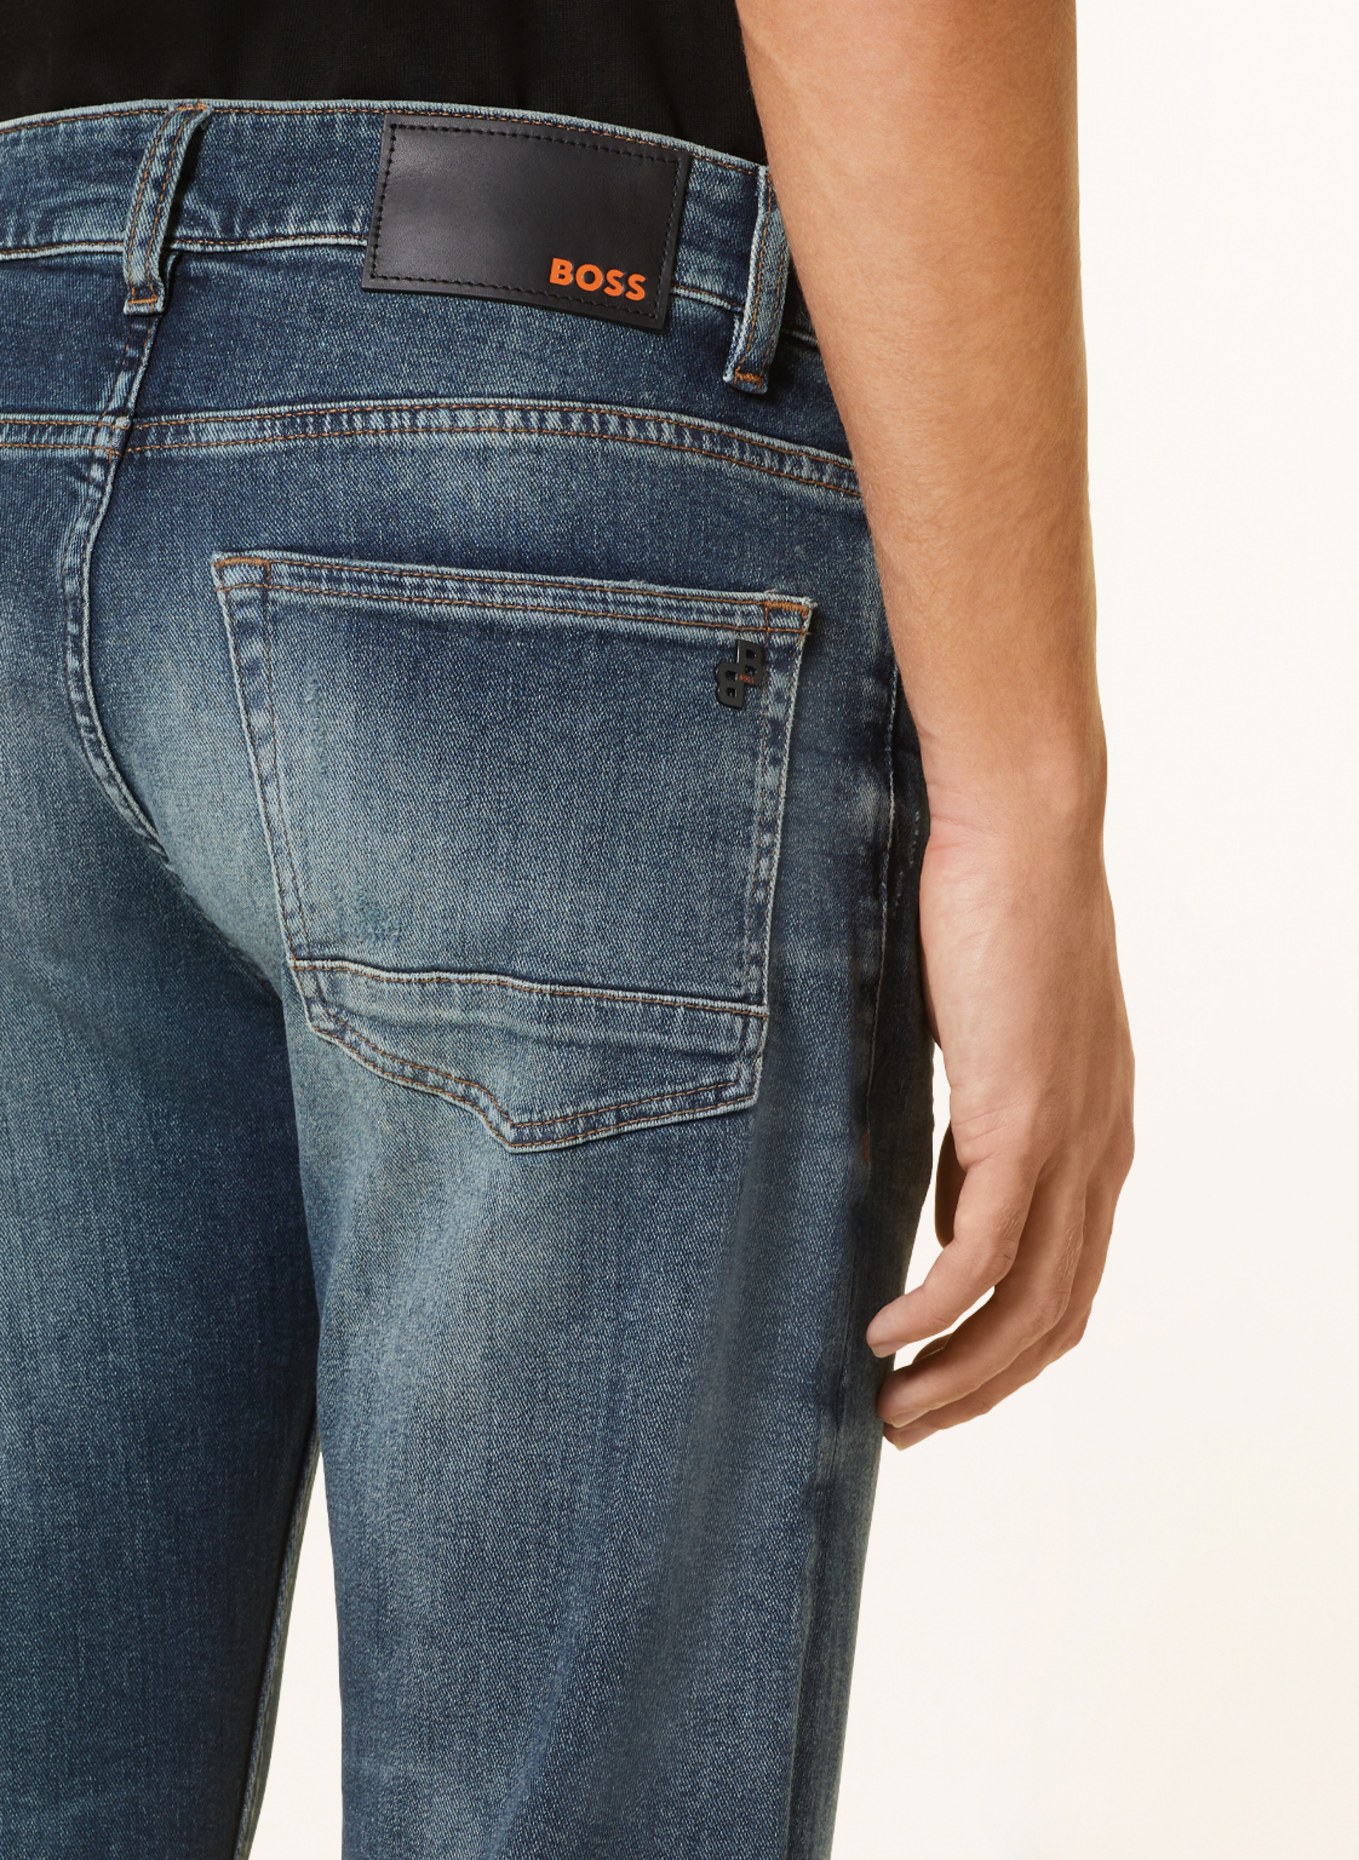 BOSS Jeans DELAWARE Slim Fit, Farbe: 413 NAVY (Bild 5)